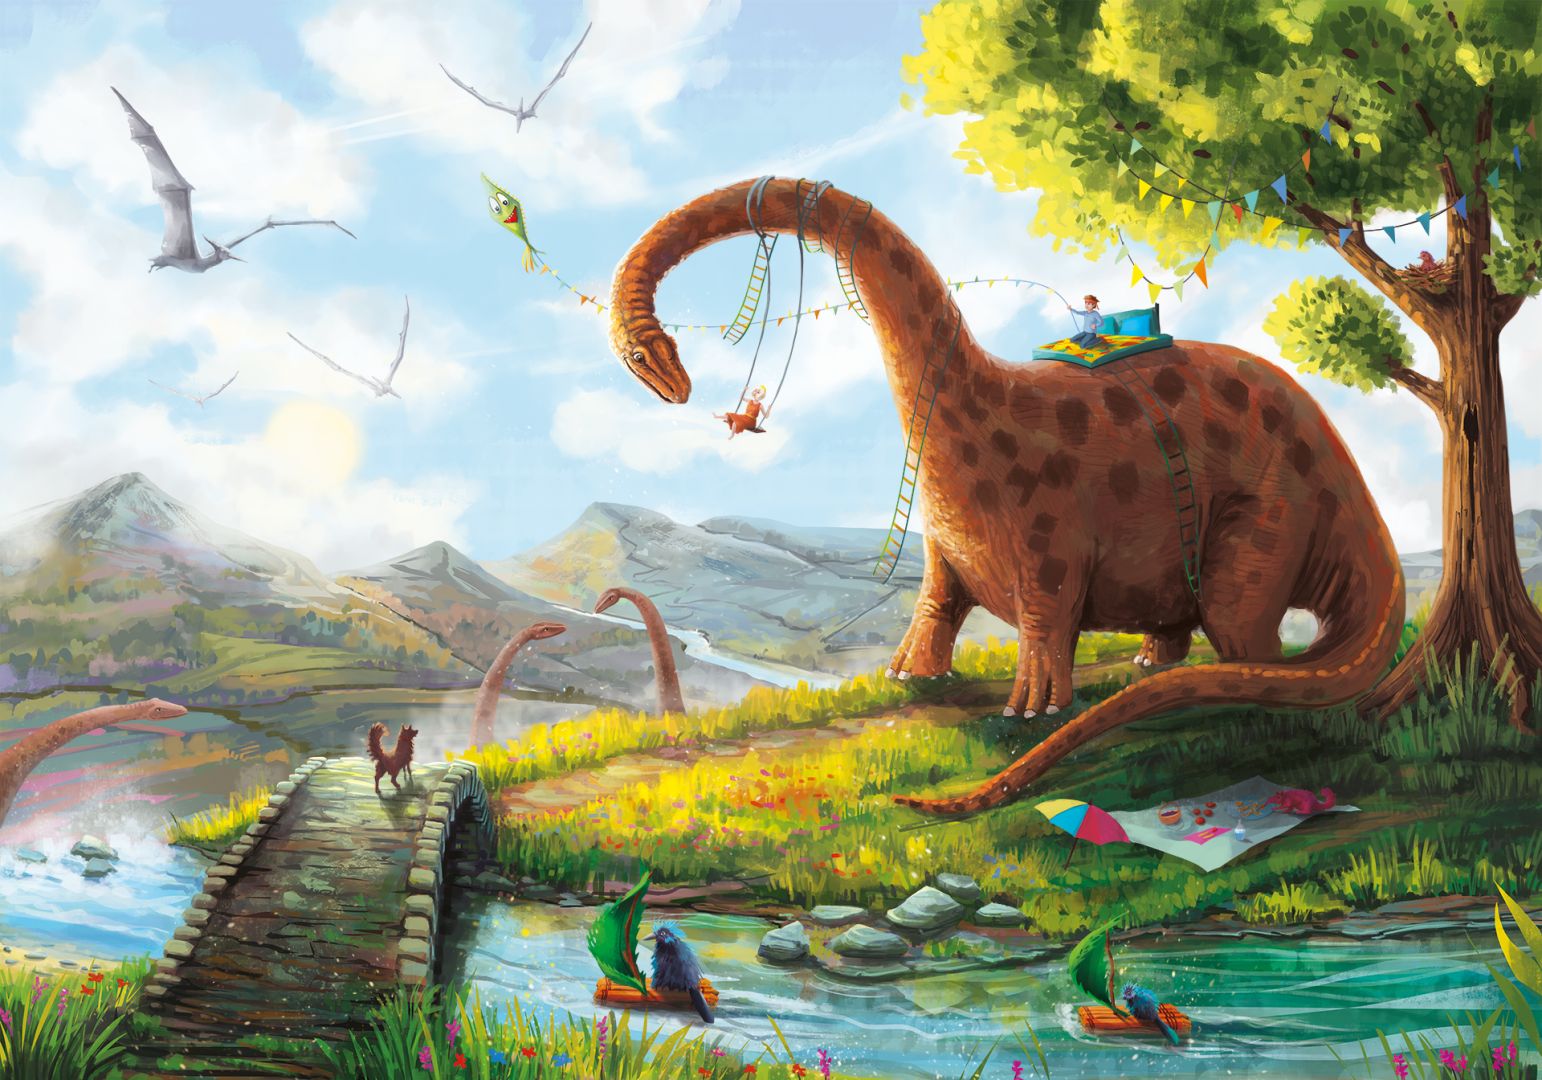 Tapeta Huśtozaur przedstawia alternatywny świat, gdzie ludzie i dinozaury żyją w zgodzie; na podkładach ekologicznych, bezpiecznych dla dziecka; nowoczesny druk lateksowy na bazie wody. Fot. Lajka Studio